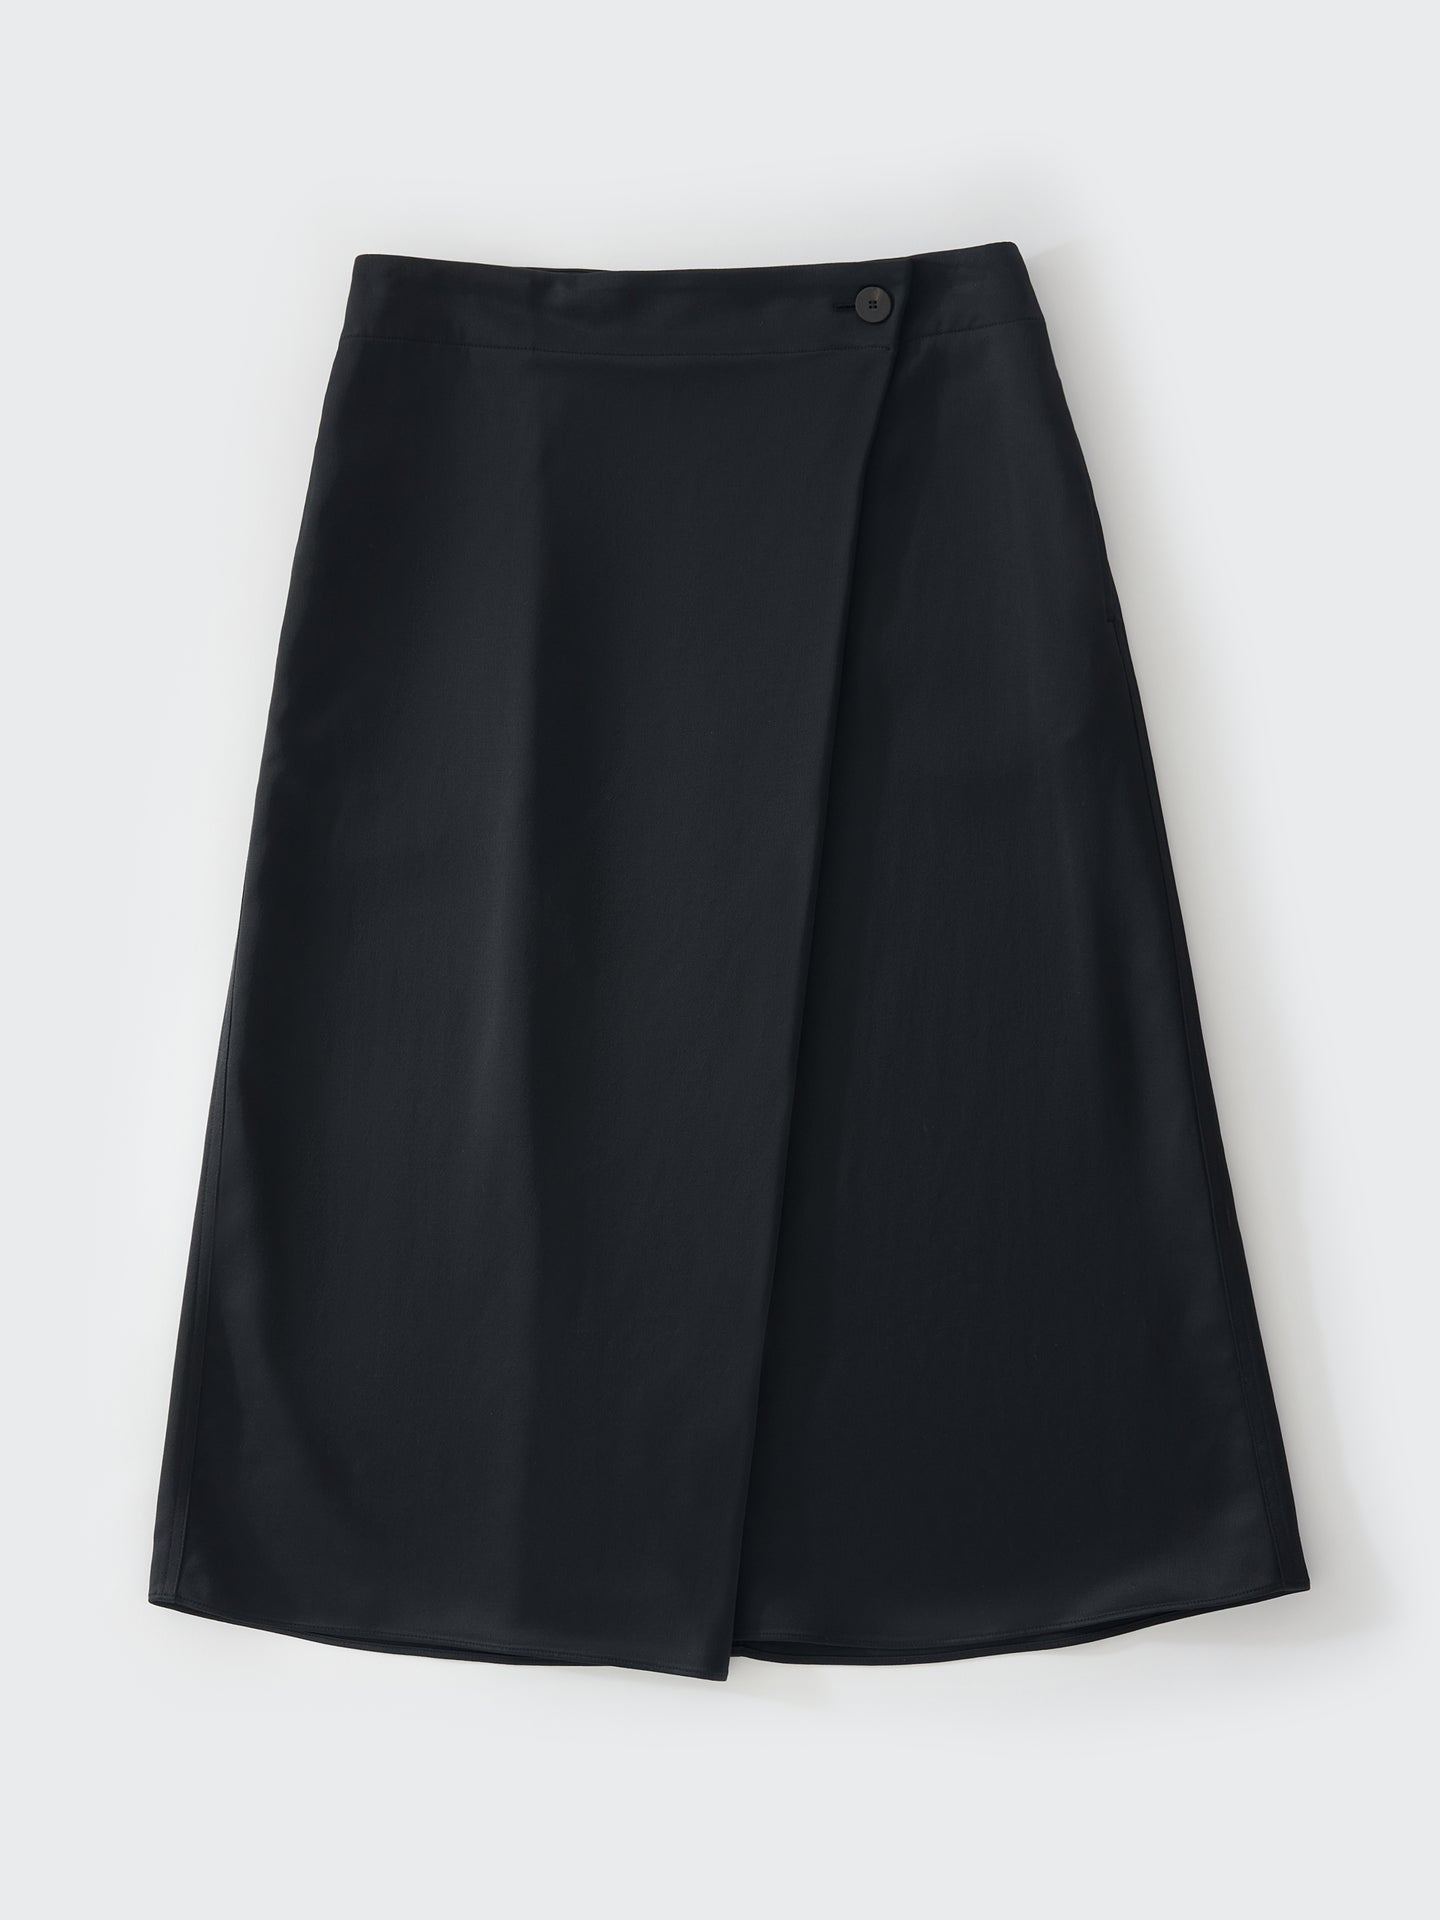 Studio Nicholson Skirts | Linen Skirts | Cotton Skirts